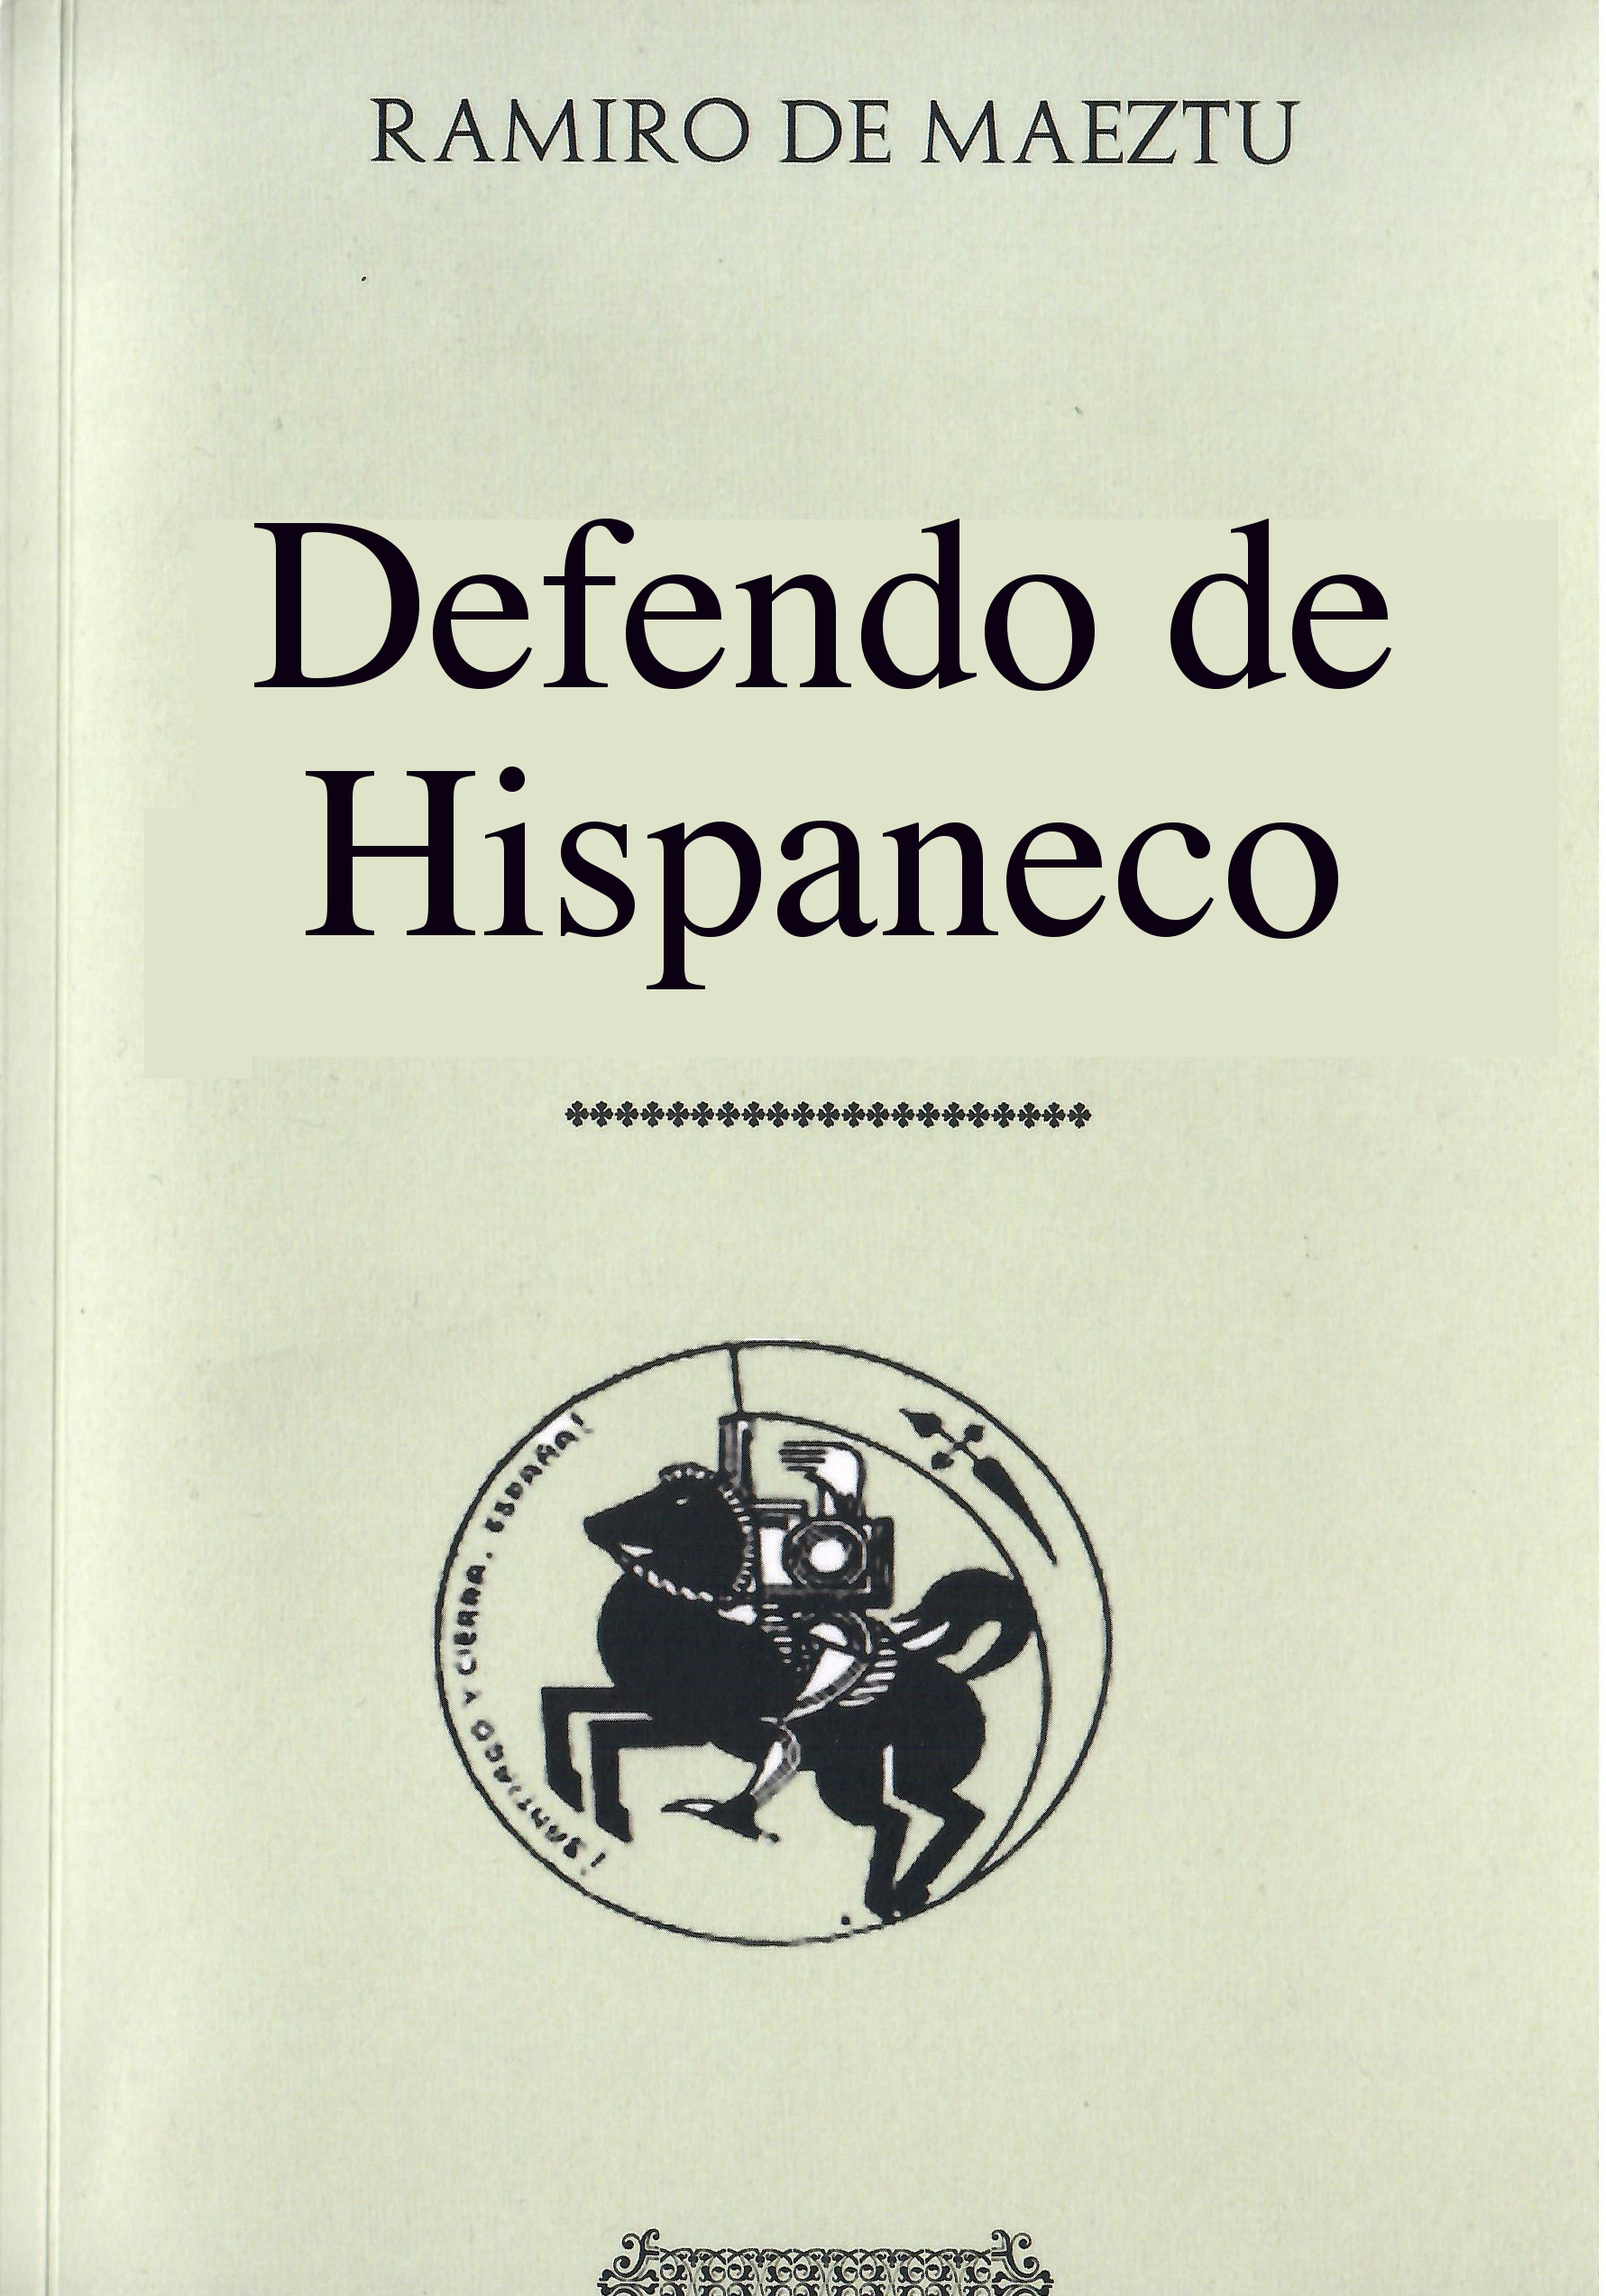 Hispaneco